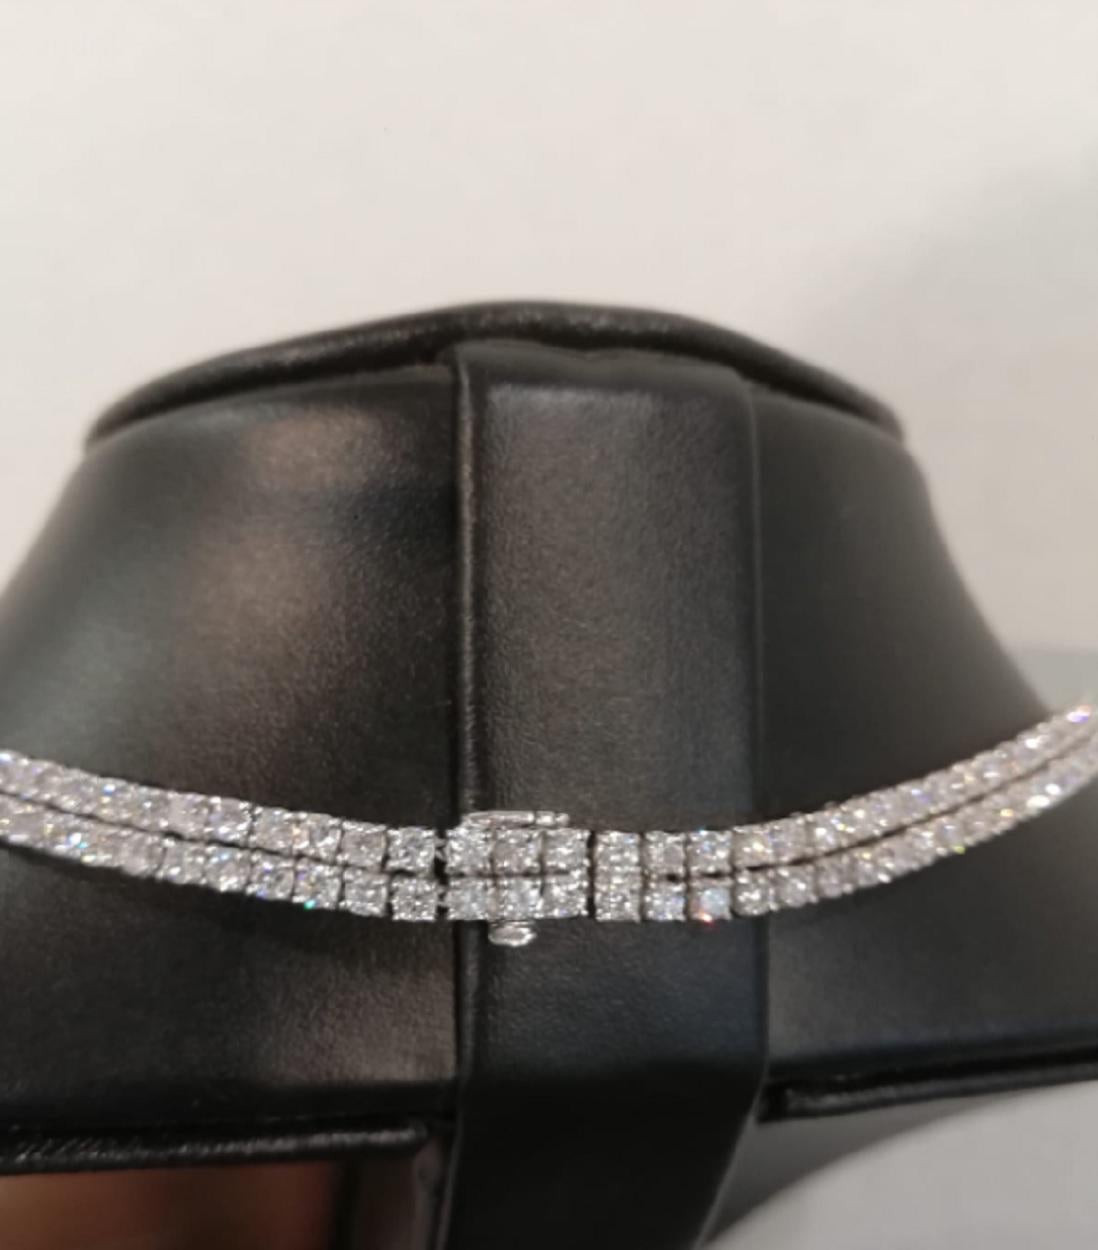 Erbstück-Halskette! Das beste Weihnachtsgeschenk für eine Dame
38 Karat doppeltes Tenniskollier mit einer sehr schönen und modern gestalteten Brosche mit Baguette-Diamanten.
Alle Diamanten sind VS/VVS Klarheit Farbe ist F/G
natürliche, unbehandelte